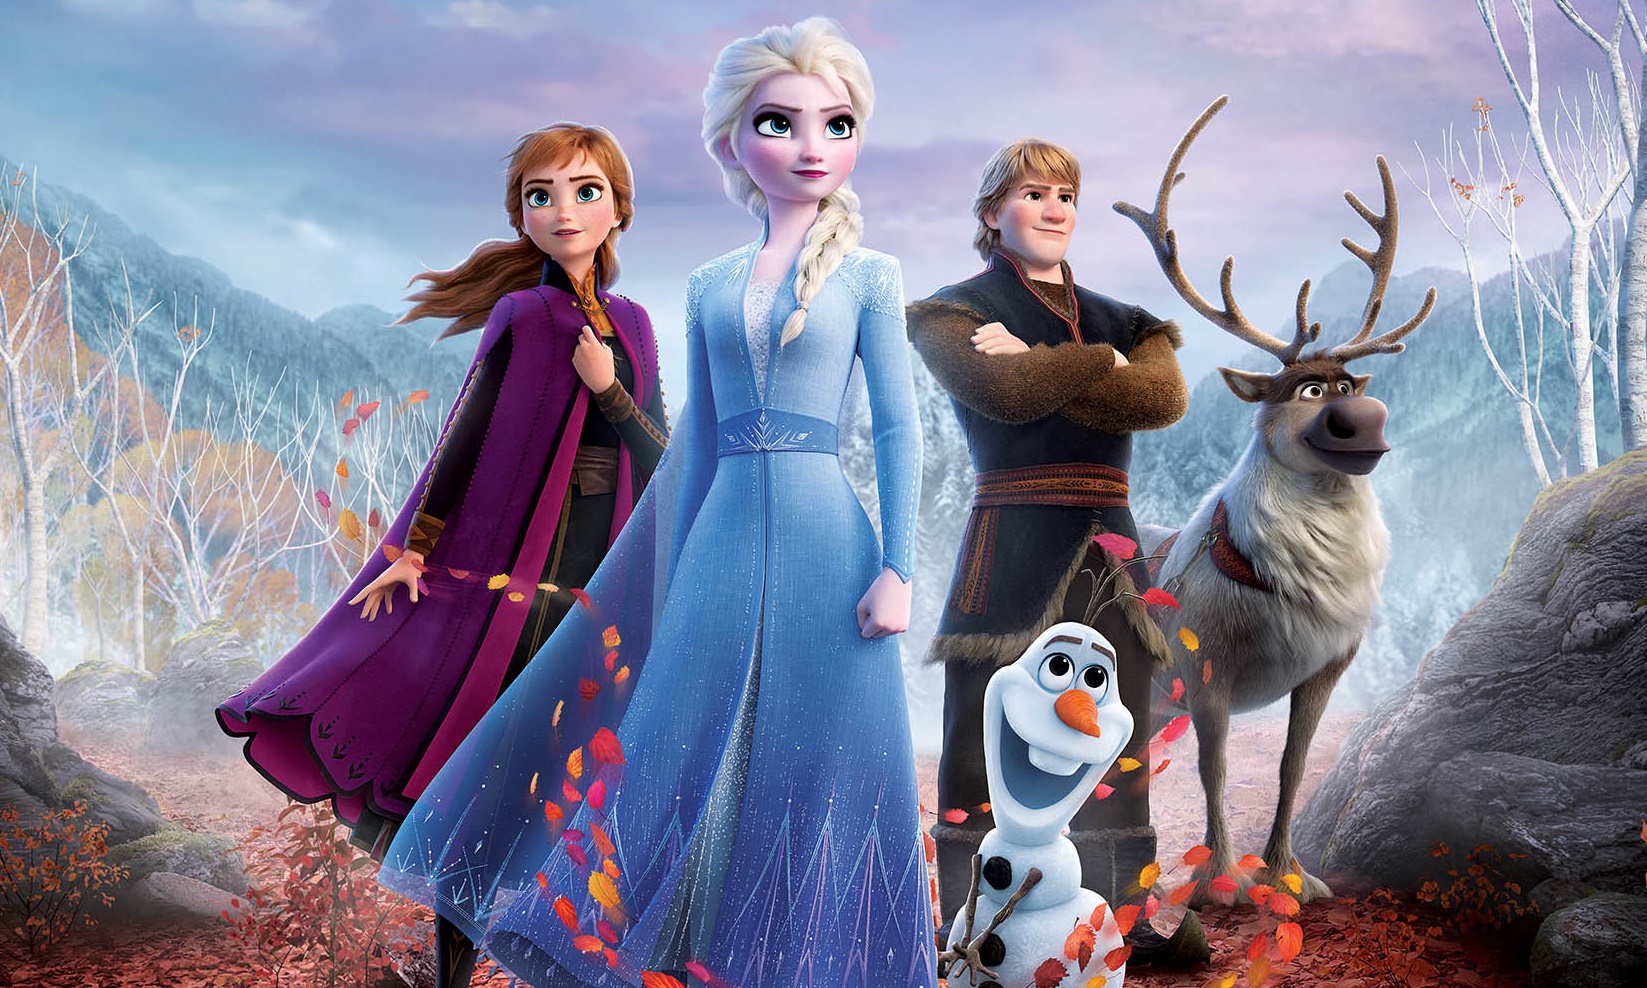 รีวิว Frozen 2 แผนการขายของครั้งใหม่ของดิสนีย์